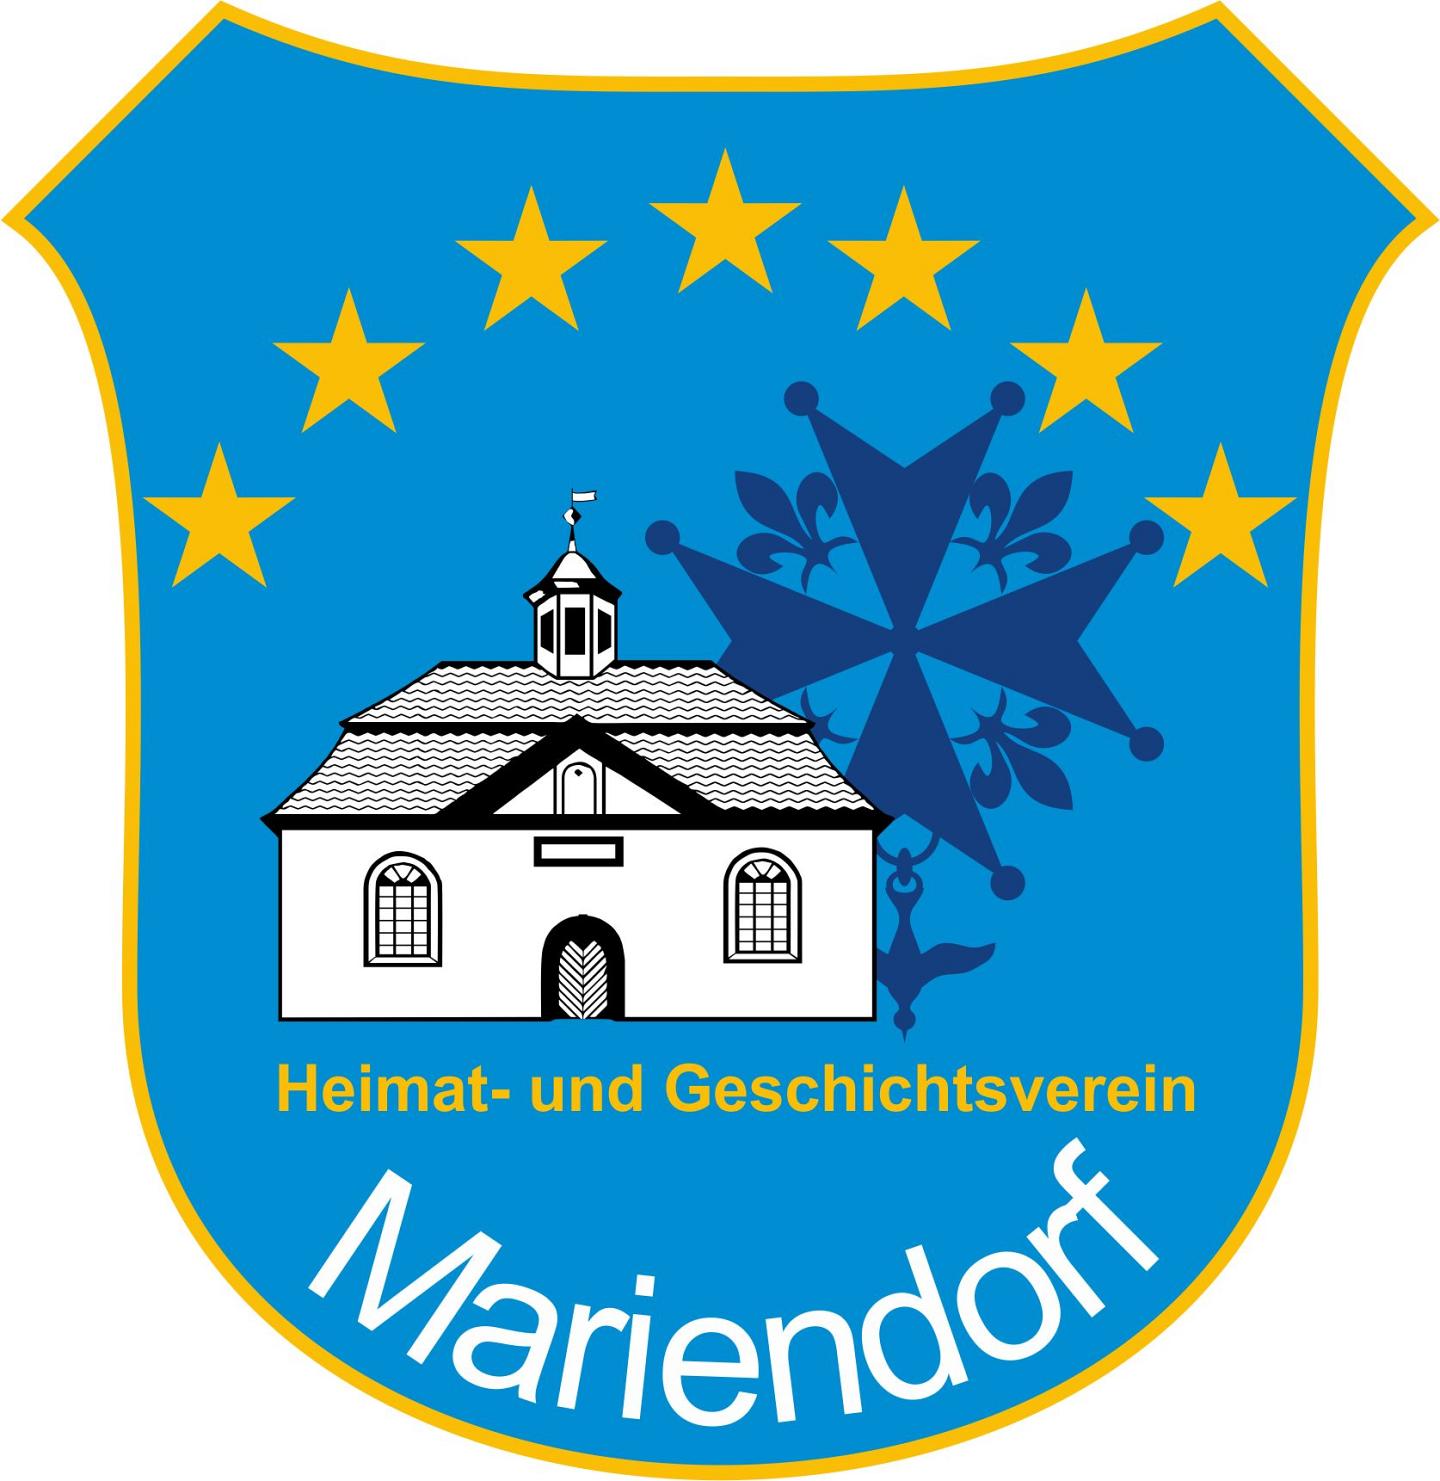 Heimat- und Geschichtsverein Mariendorf e.V.